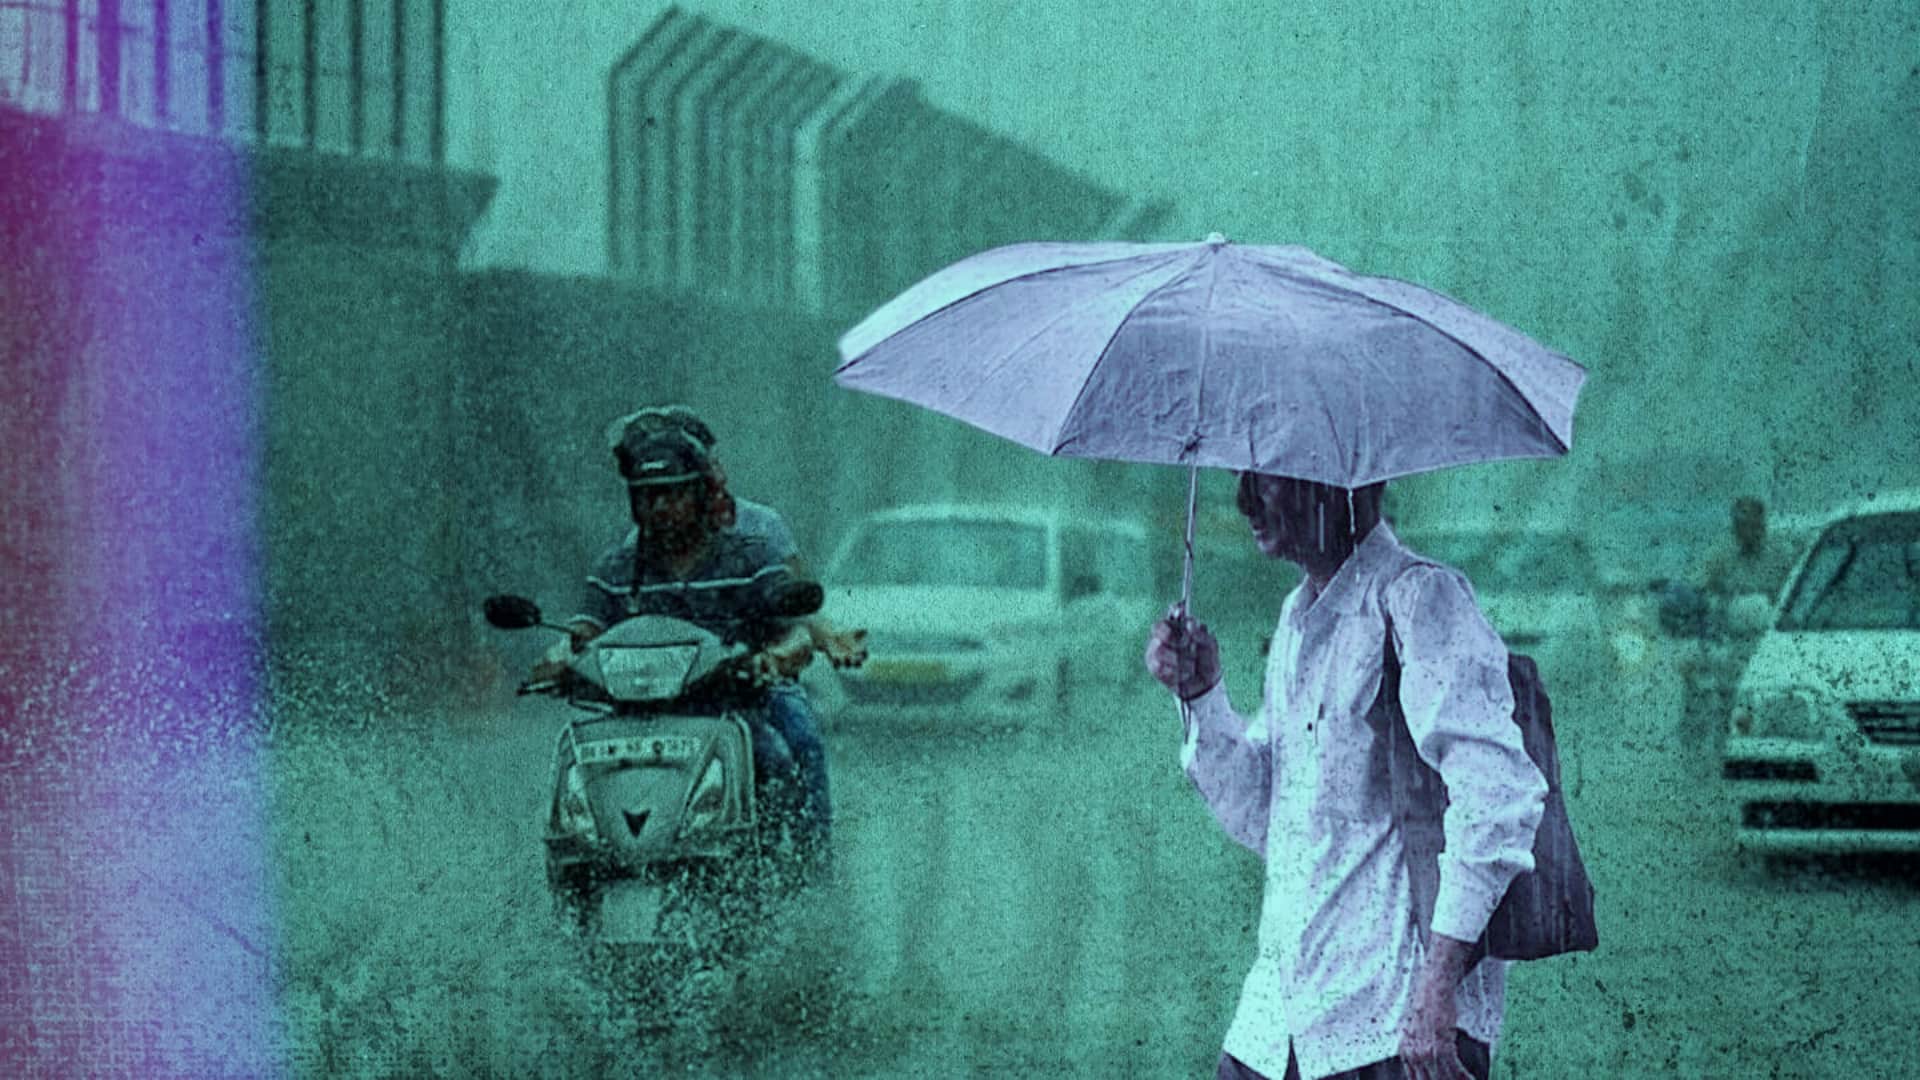 दिल्ली में बारिश से आफत; सड़कें जाम, मेट्रो सेवा प्रभावित, मंत्रियों-सांसदों के घरों में घुसा पानी